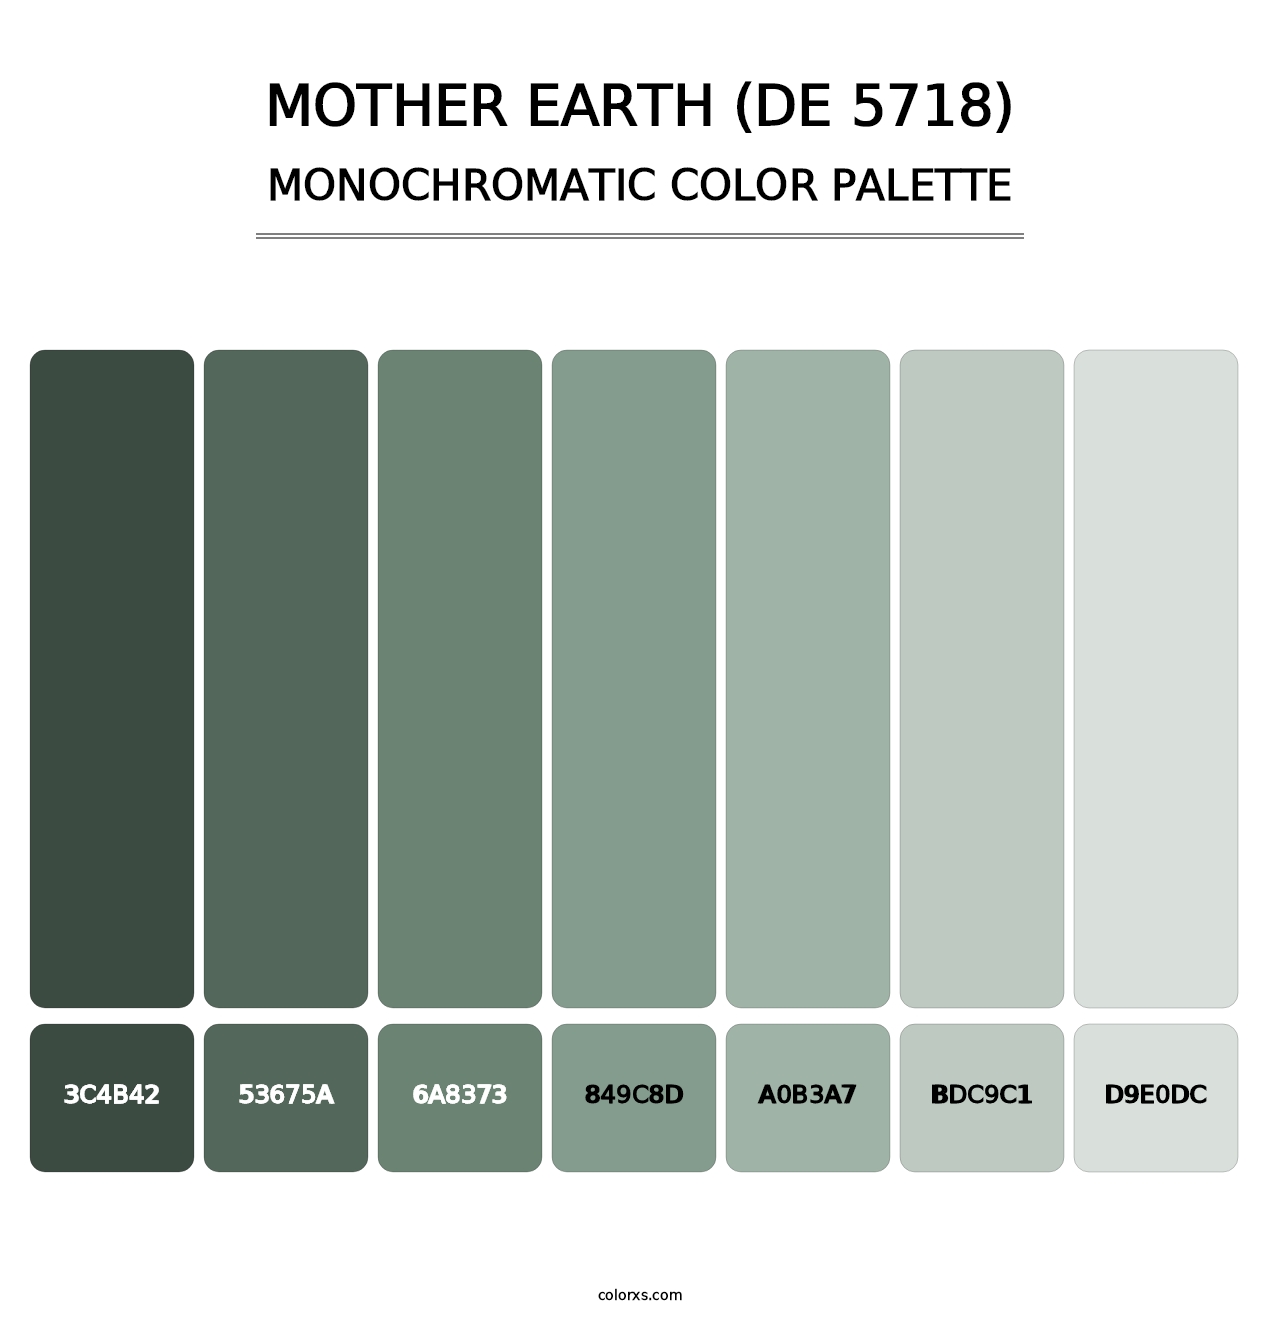 Mother Earth (DE 5718) - Monochromatic Color Palette